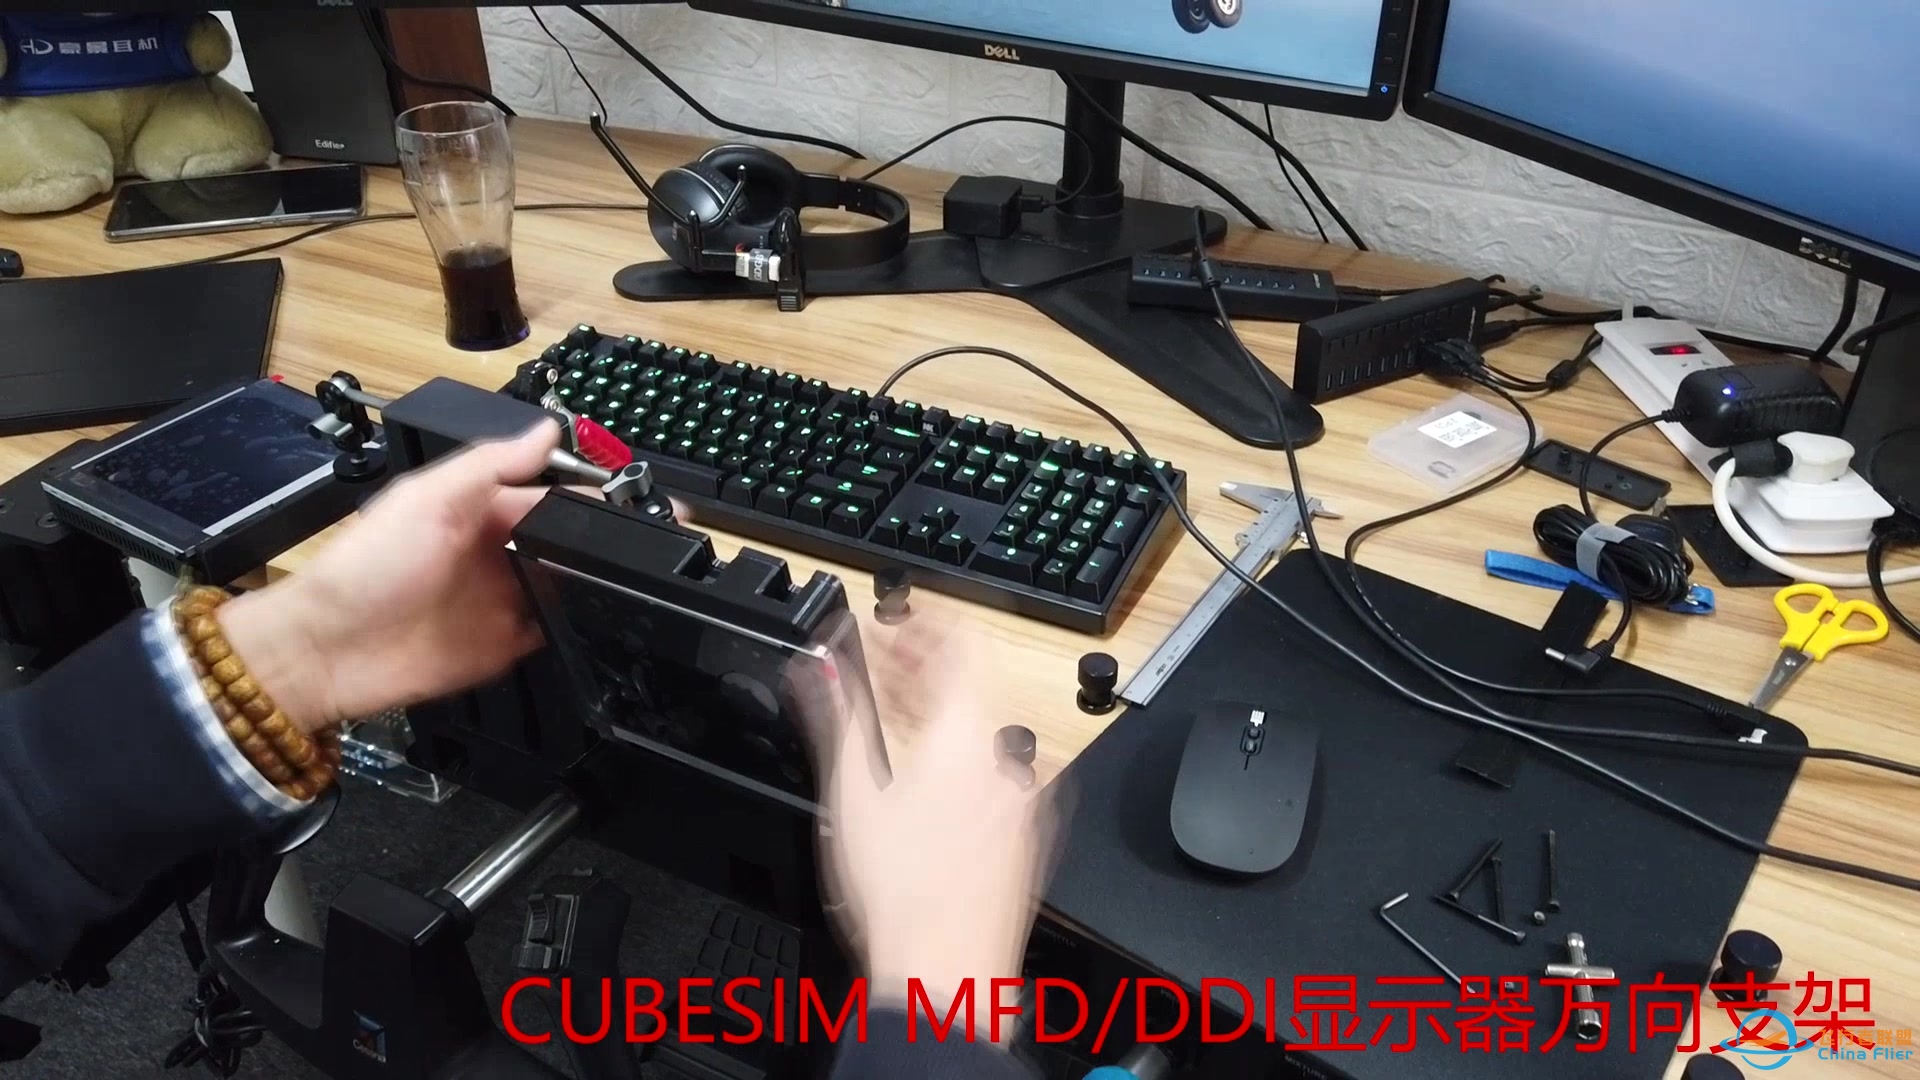 CUBESIM 飞行摇杆&amp;amp;MFD/DDI显示器 桌面支架-8197 